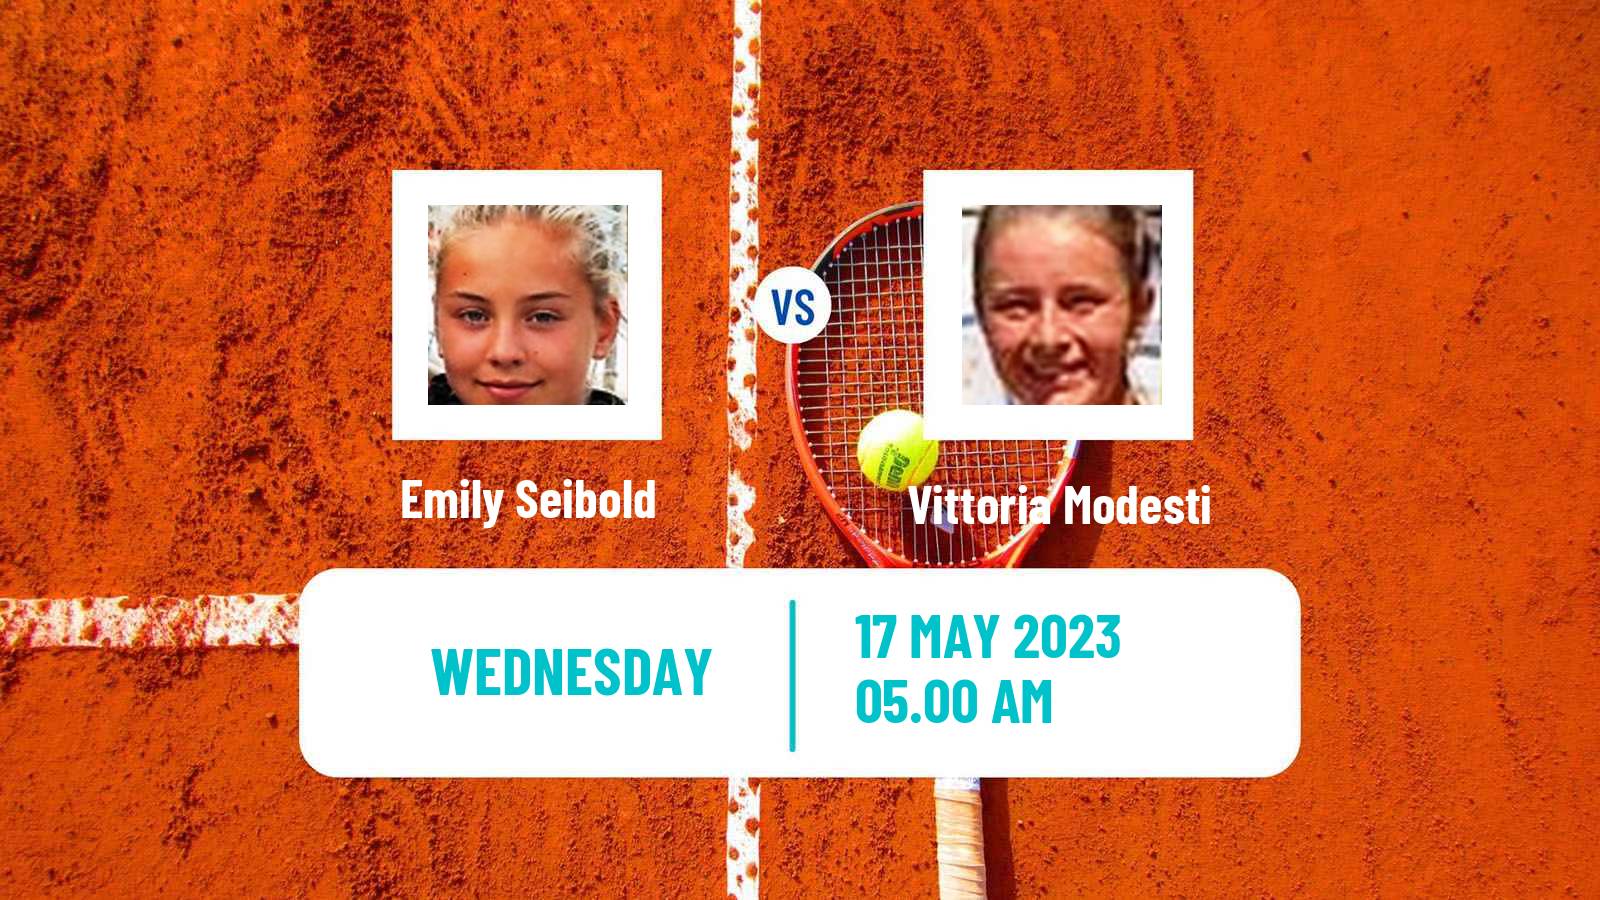 Tennis ITF W25 Feld Am See Women Emily Seibold - Vittoria Modesti